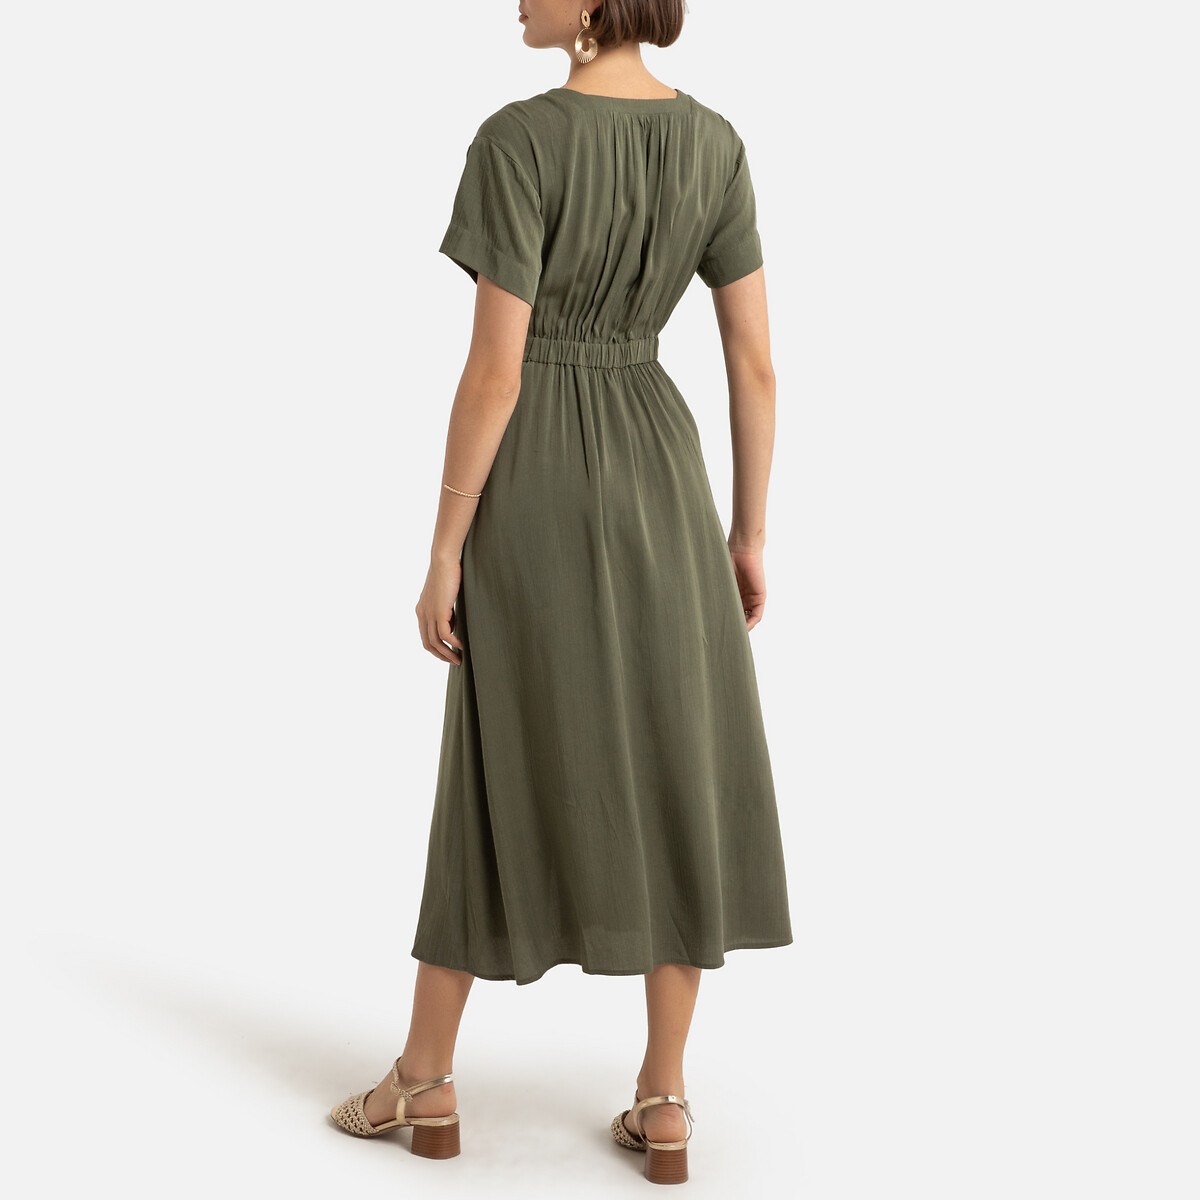 Платье-миди LaRedoute С короткими рукавами и V-образным вырезом 0(XS) зеленый, размер 0(XS) С короткими рукавами и V-образным вырезом 0(XS) зеленый - фото 4